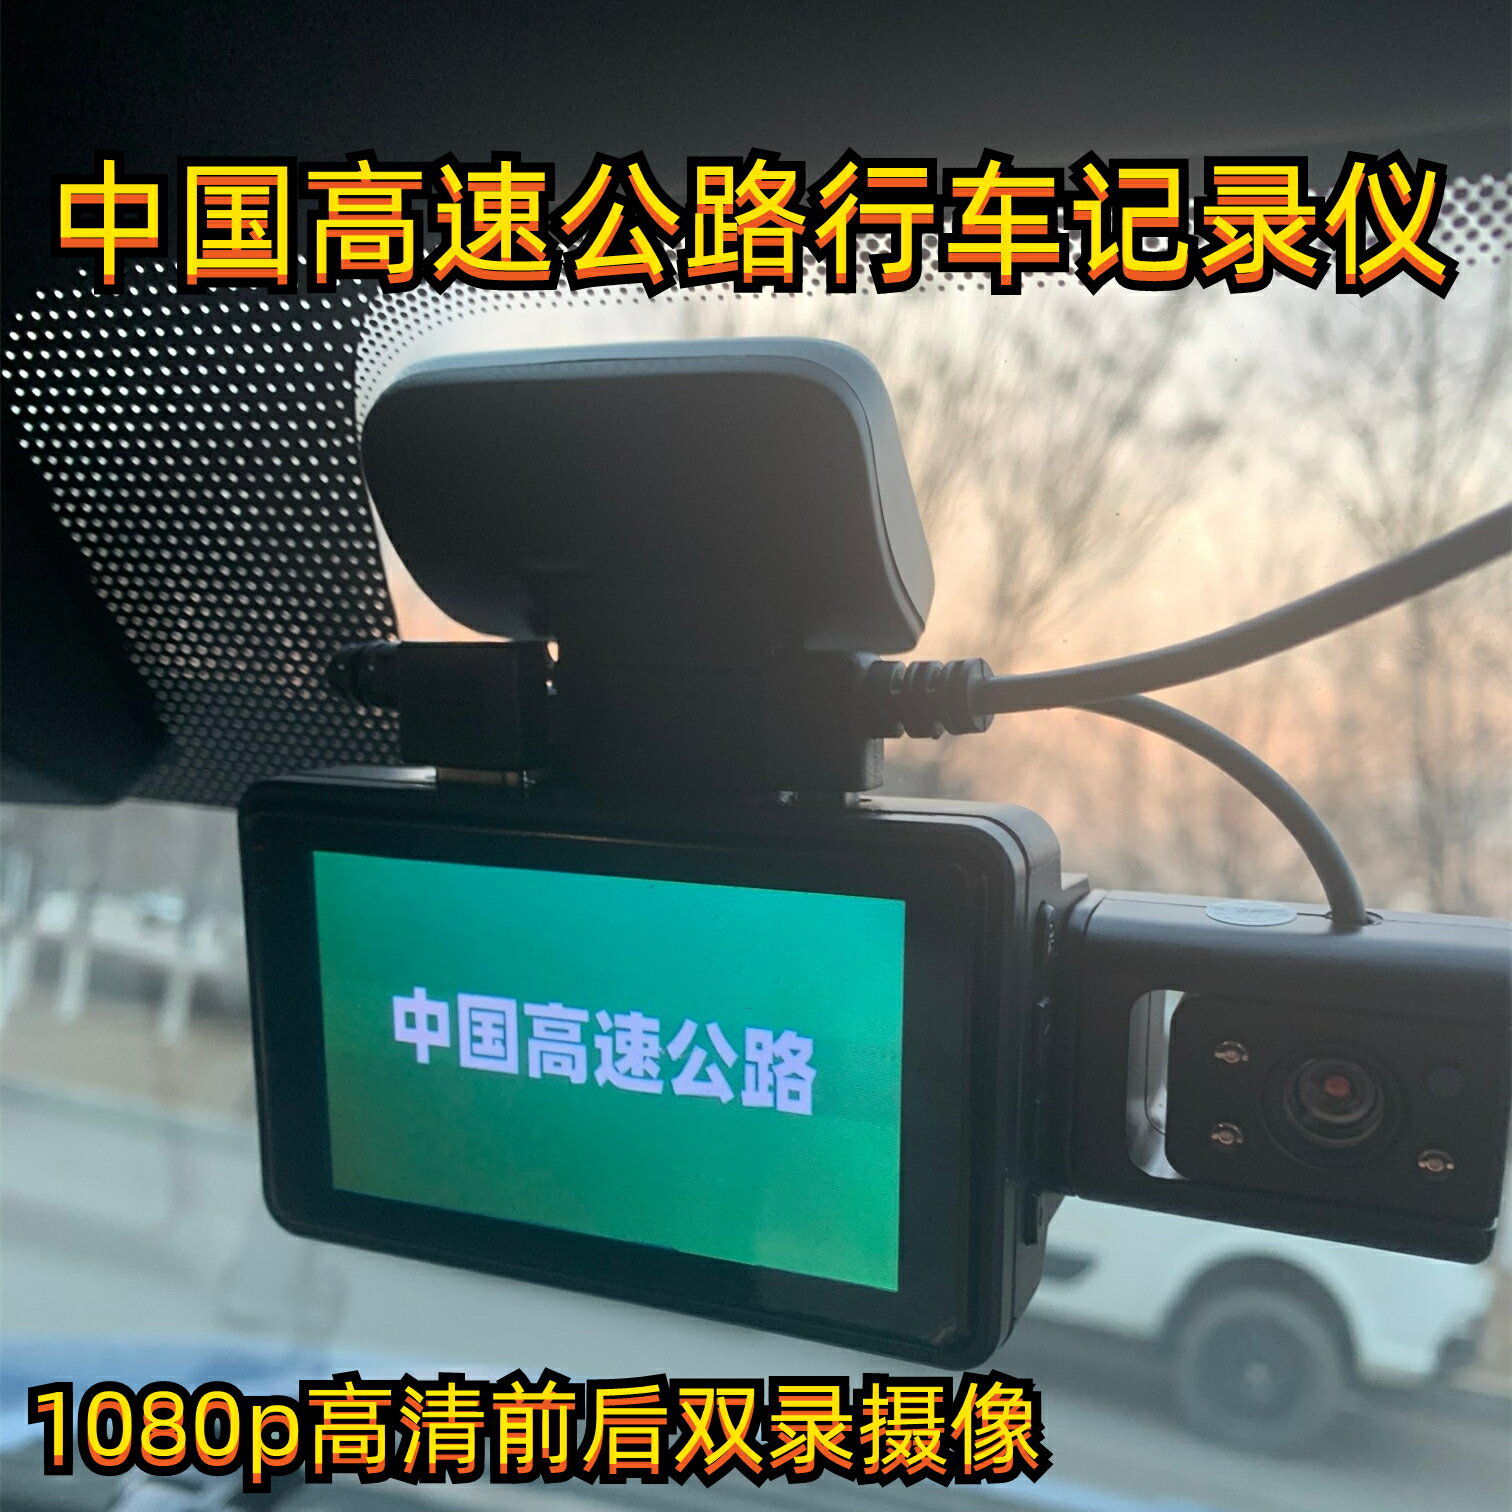 中國高速公路行車記錄儀1080p高清前后雙錄攝像車內車外同時錄像